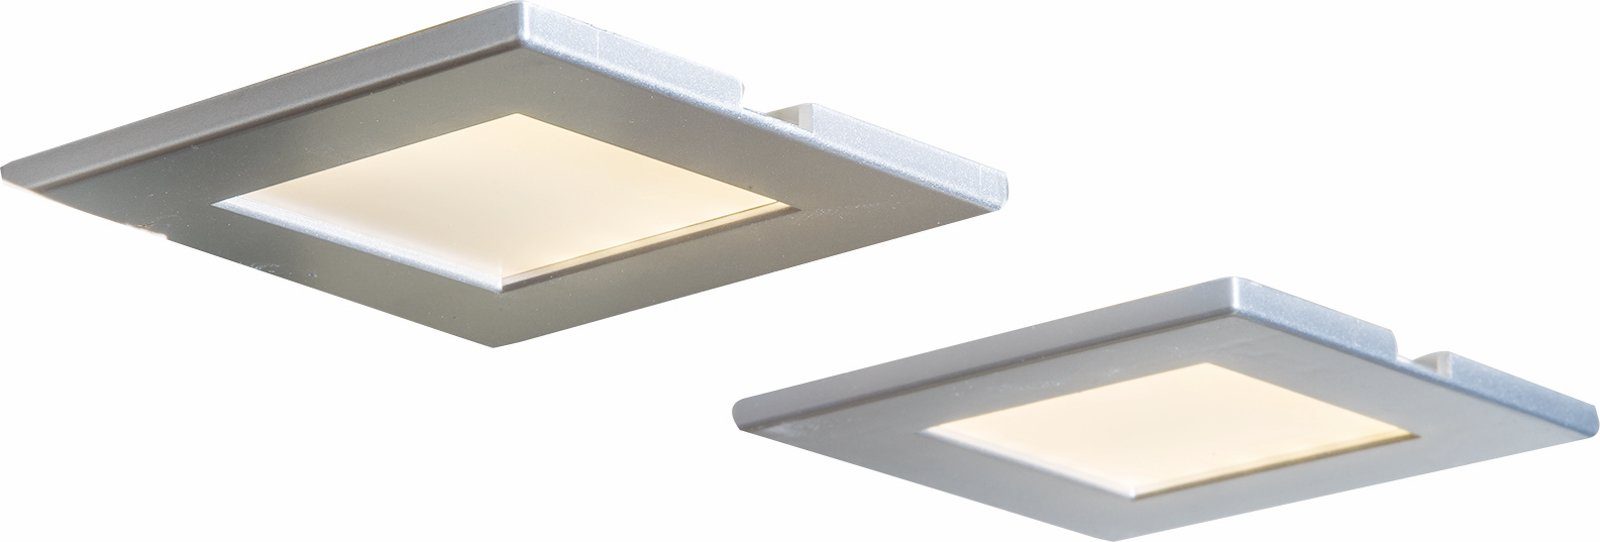 Neue beliebte Modelle bmf-versand Deckenleuchte Nino Unterbauleuchte LED Deckenleuchte Deckenstrahler Leuchten Einbau